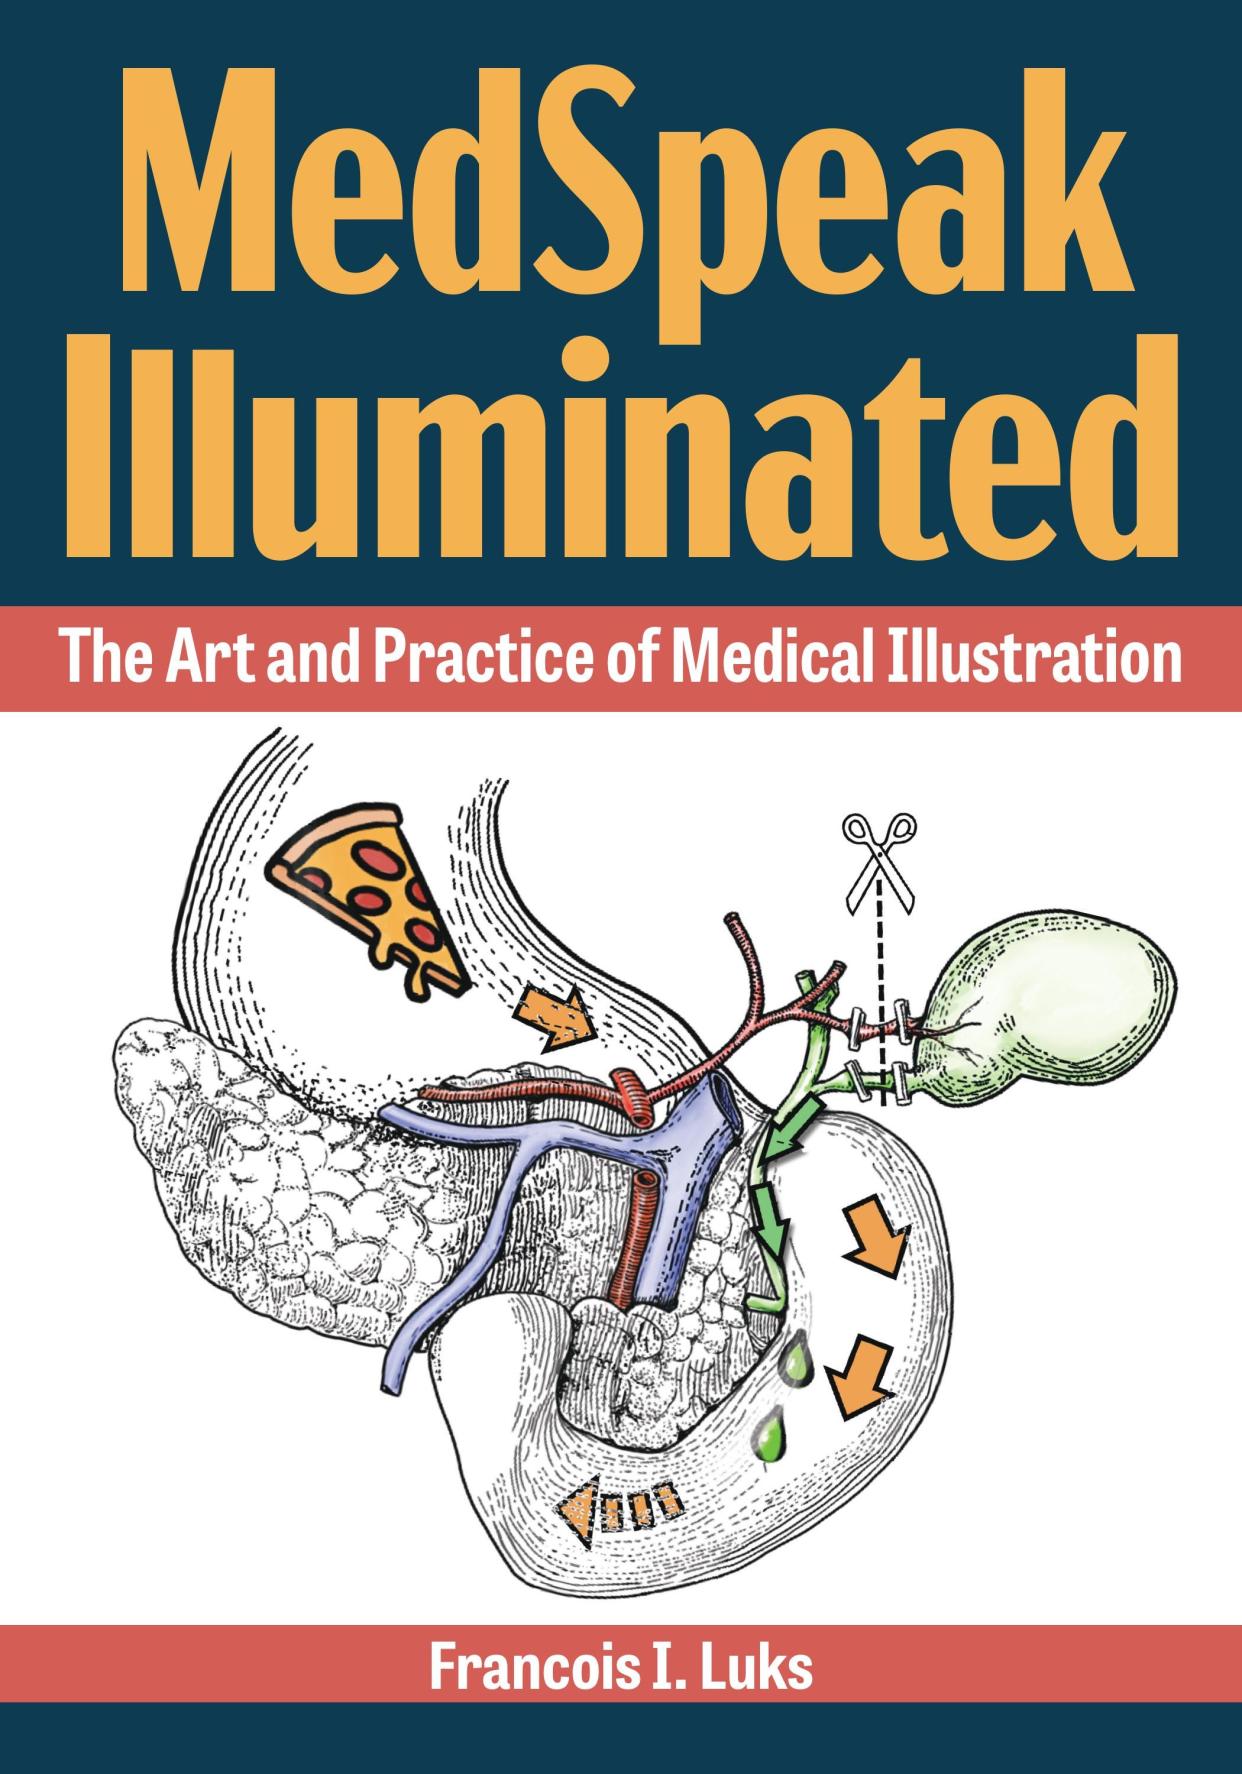 MedSpeak Illuminated book cover